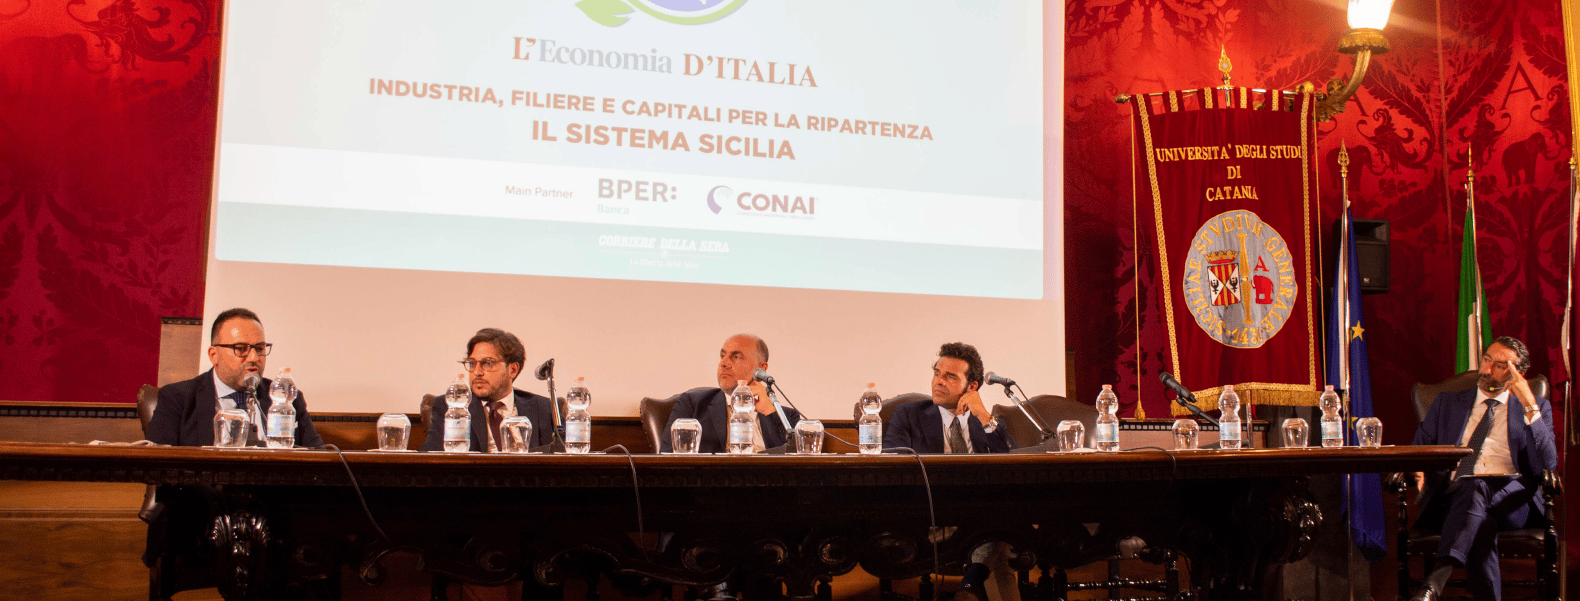 Evento Corriere della Sera a Catania - Digital One